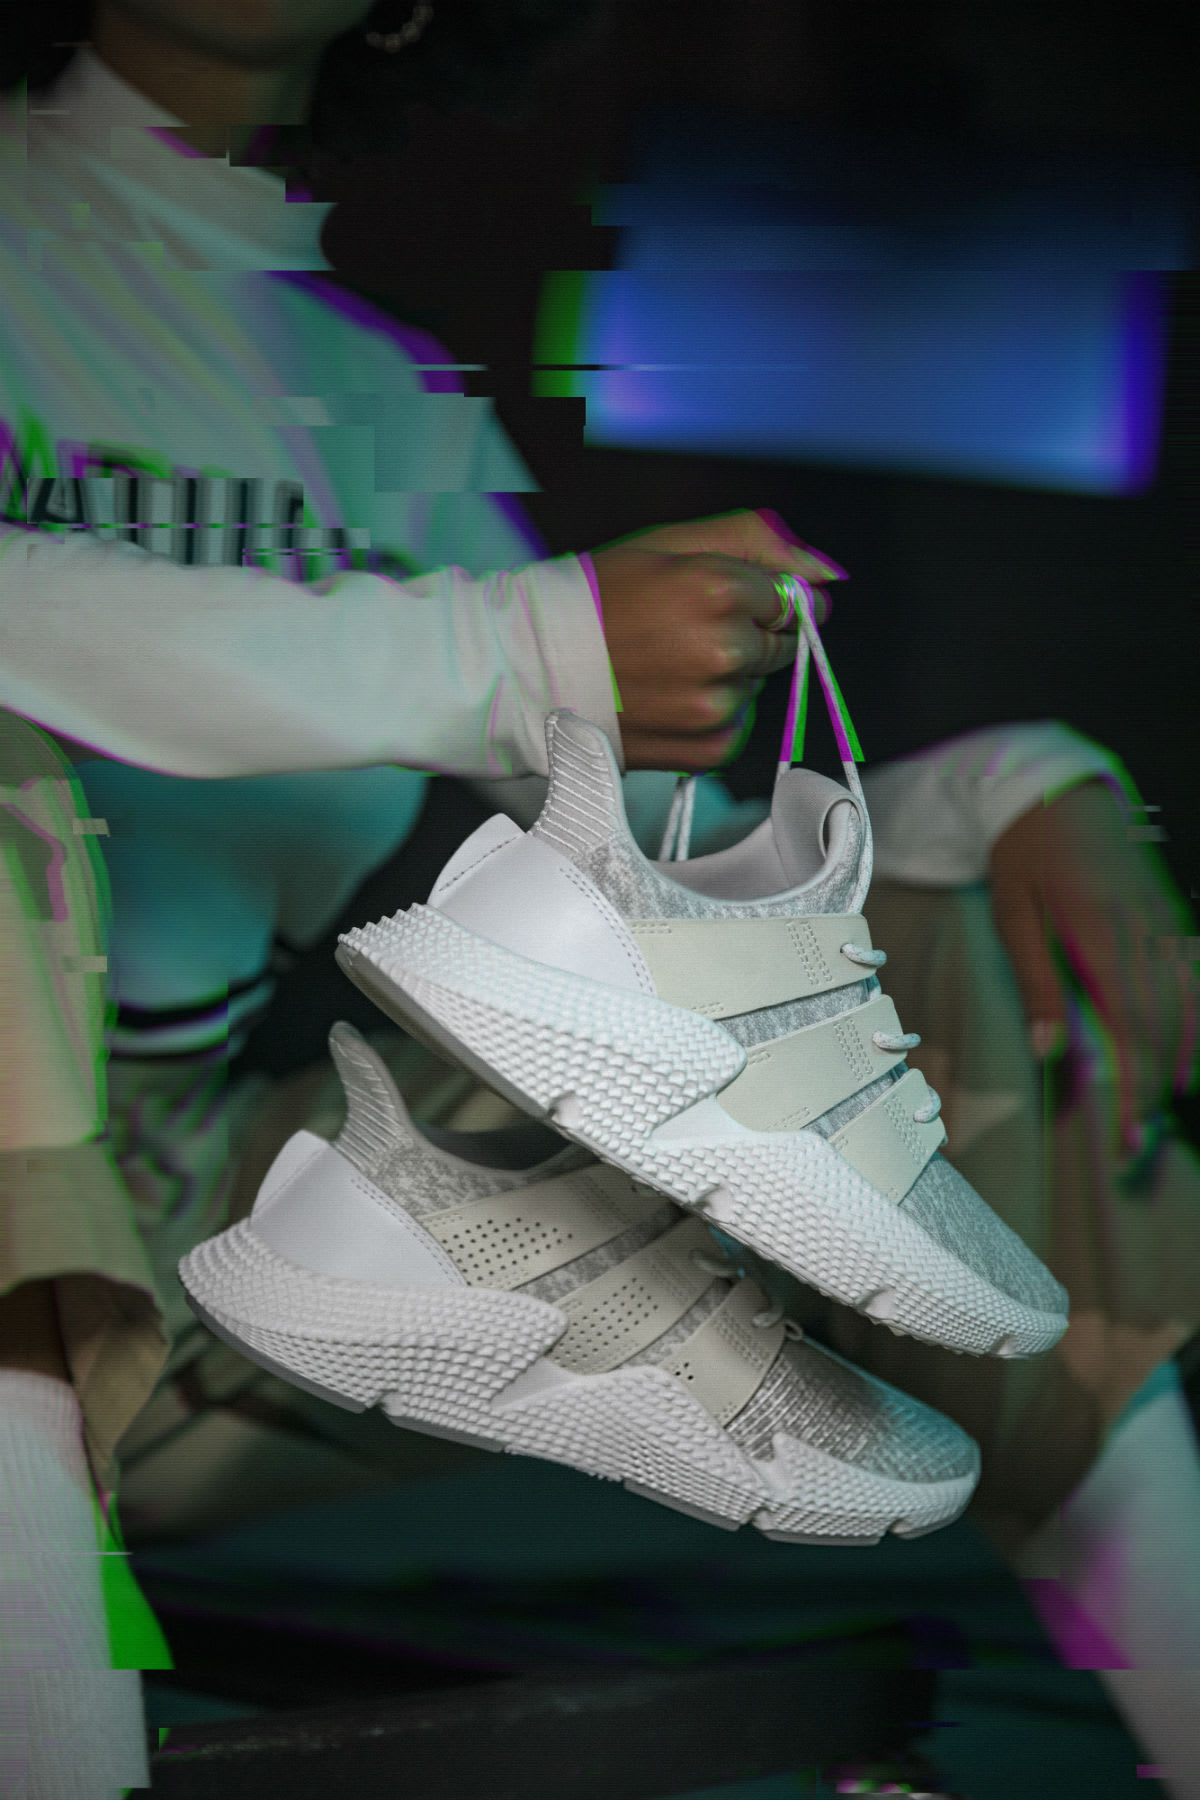 adidas prophere white on feet